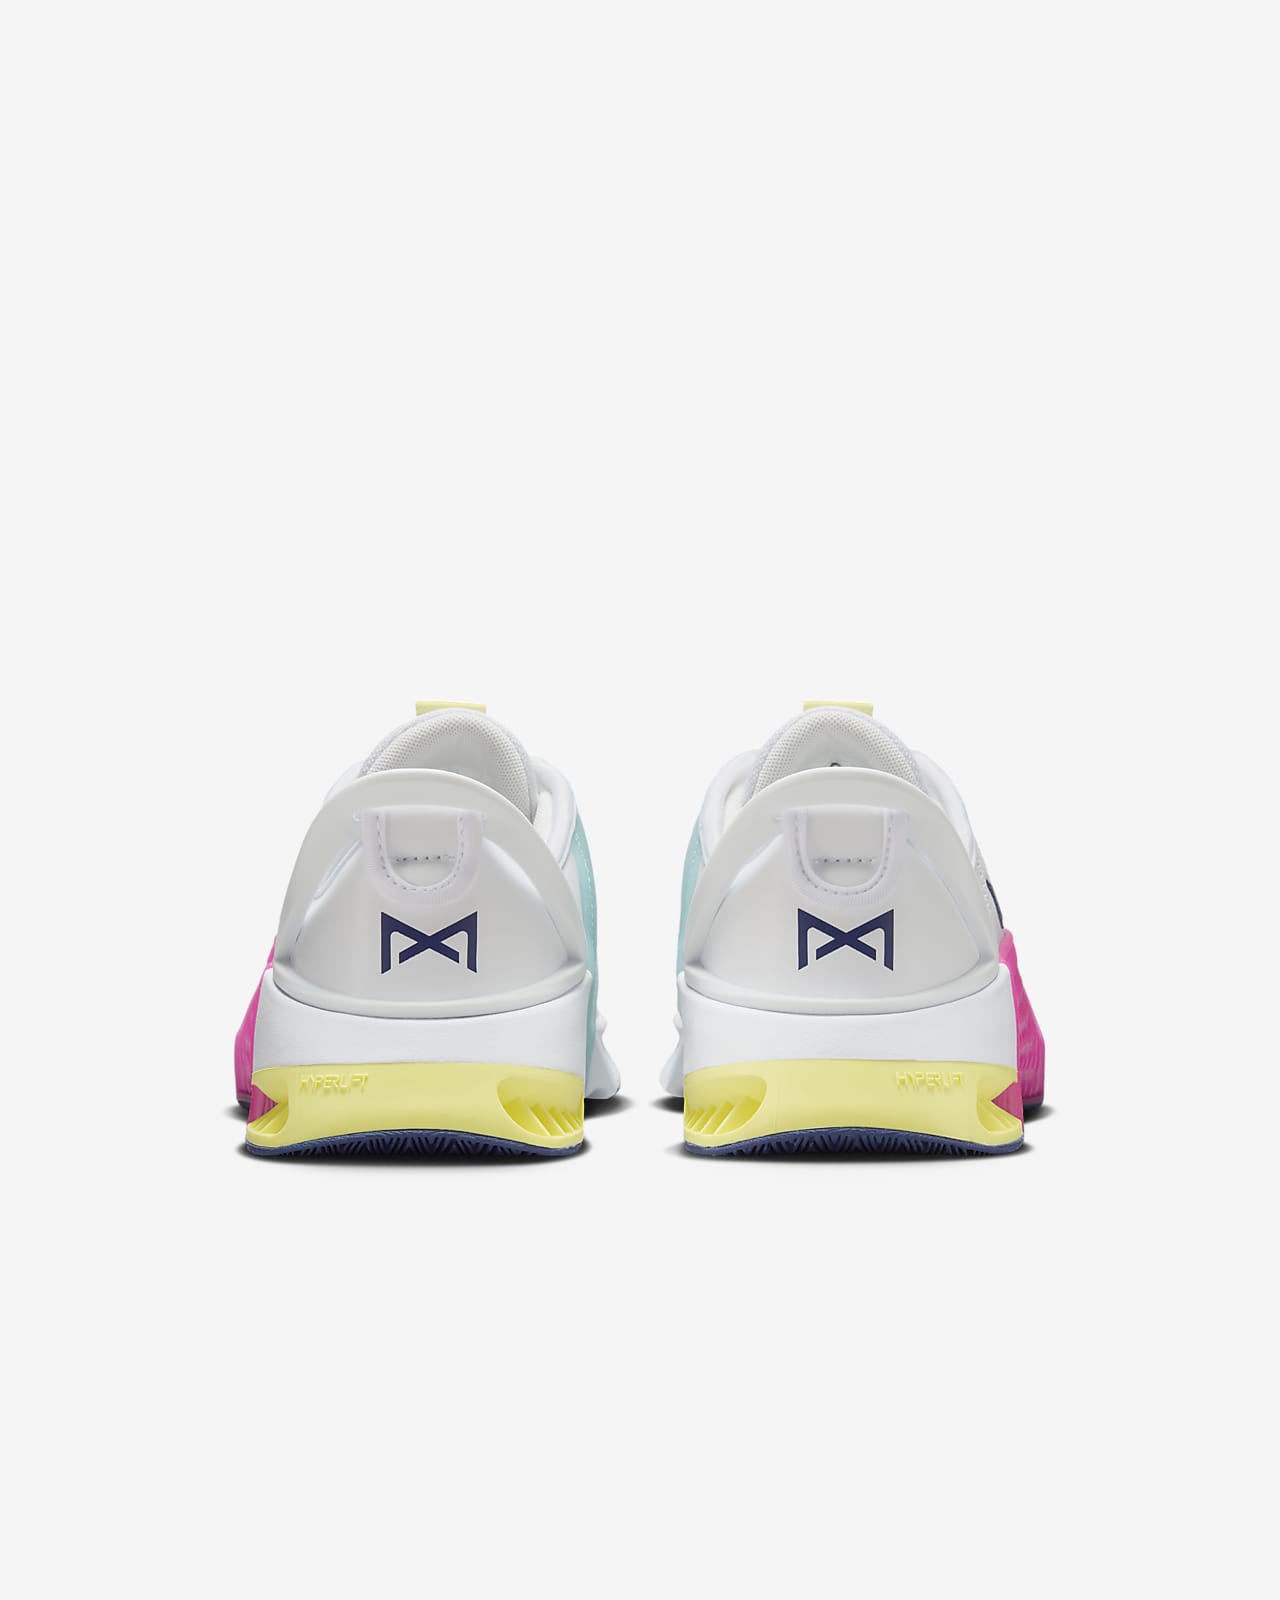 Calzado de entrenamiento para hombre Nike Metcon 9 EasyOn. Nike MX